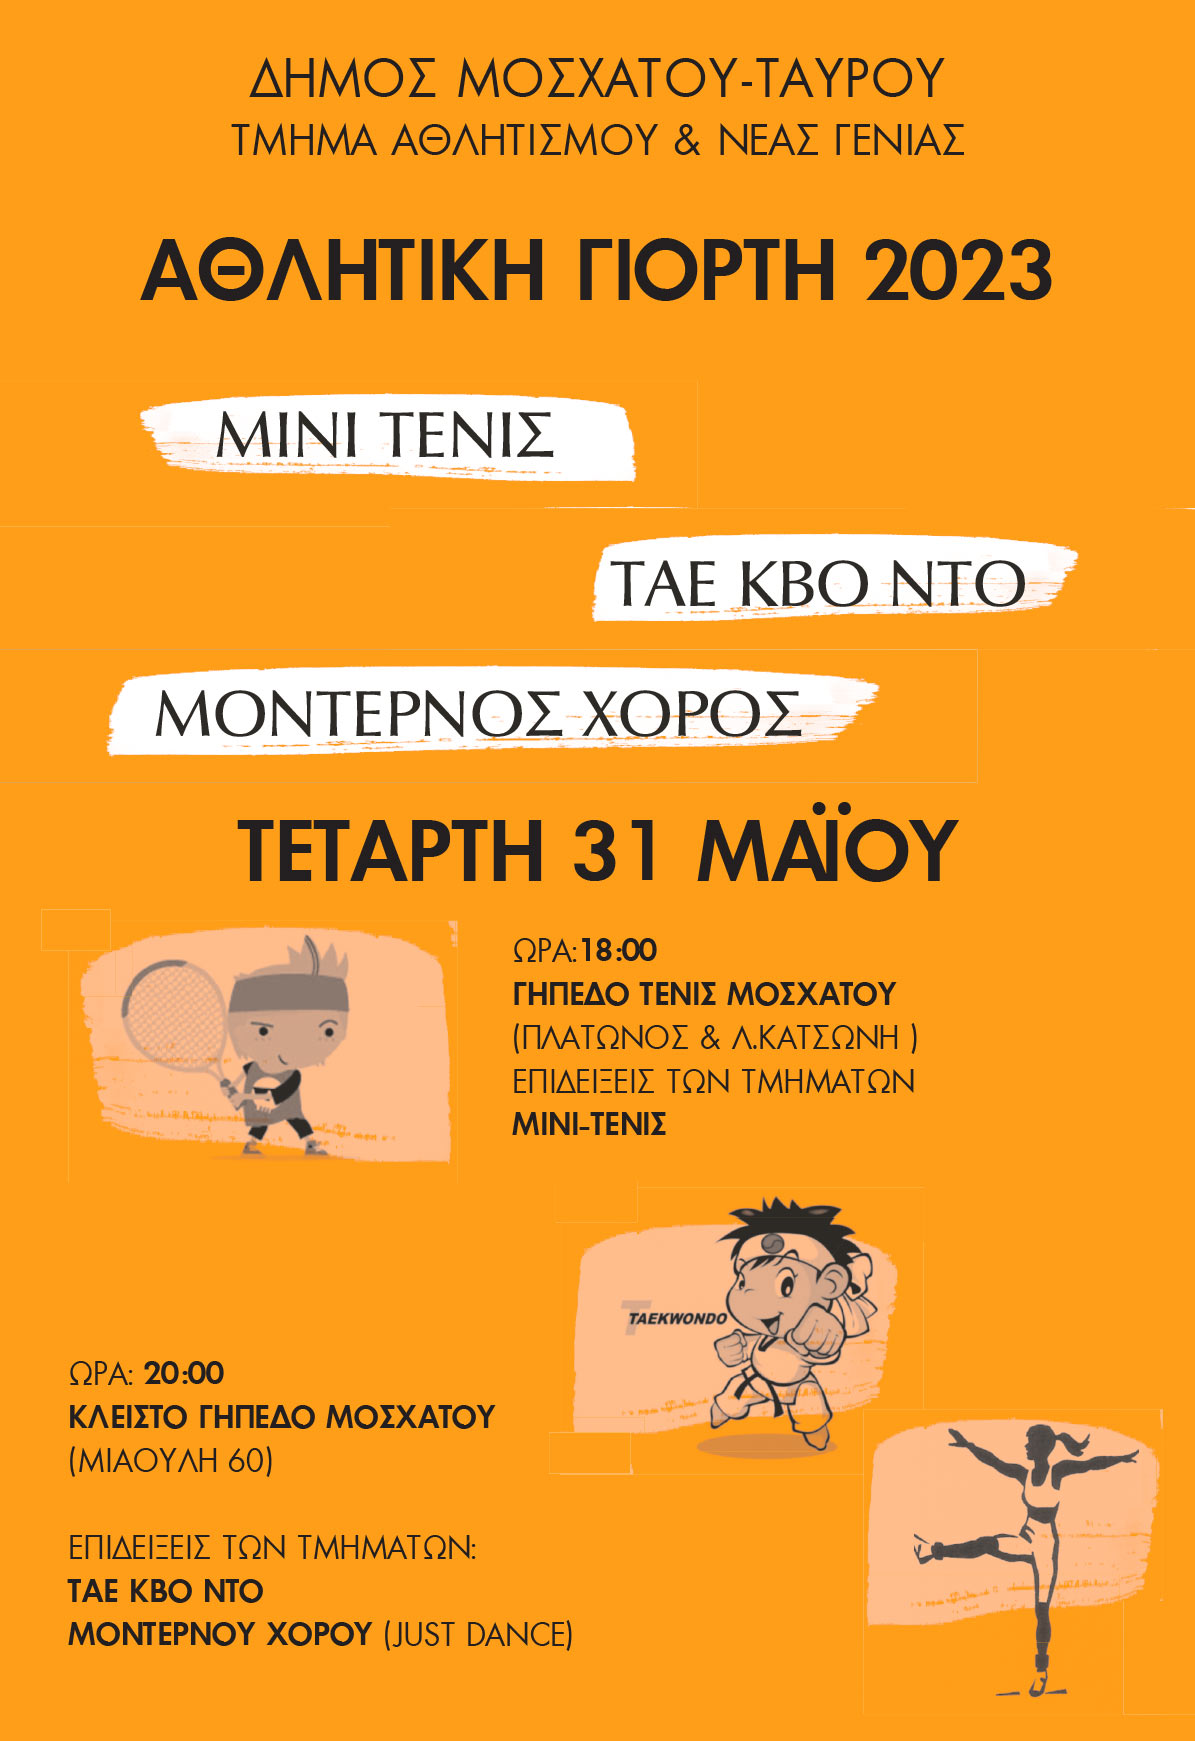 Αθλητική Γιορτή 2023 Δήμου Μοσχάτου-Ταύρου